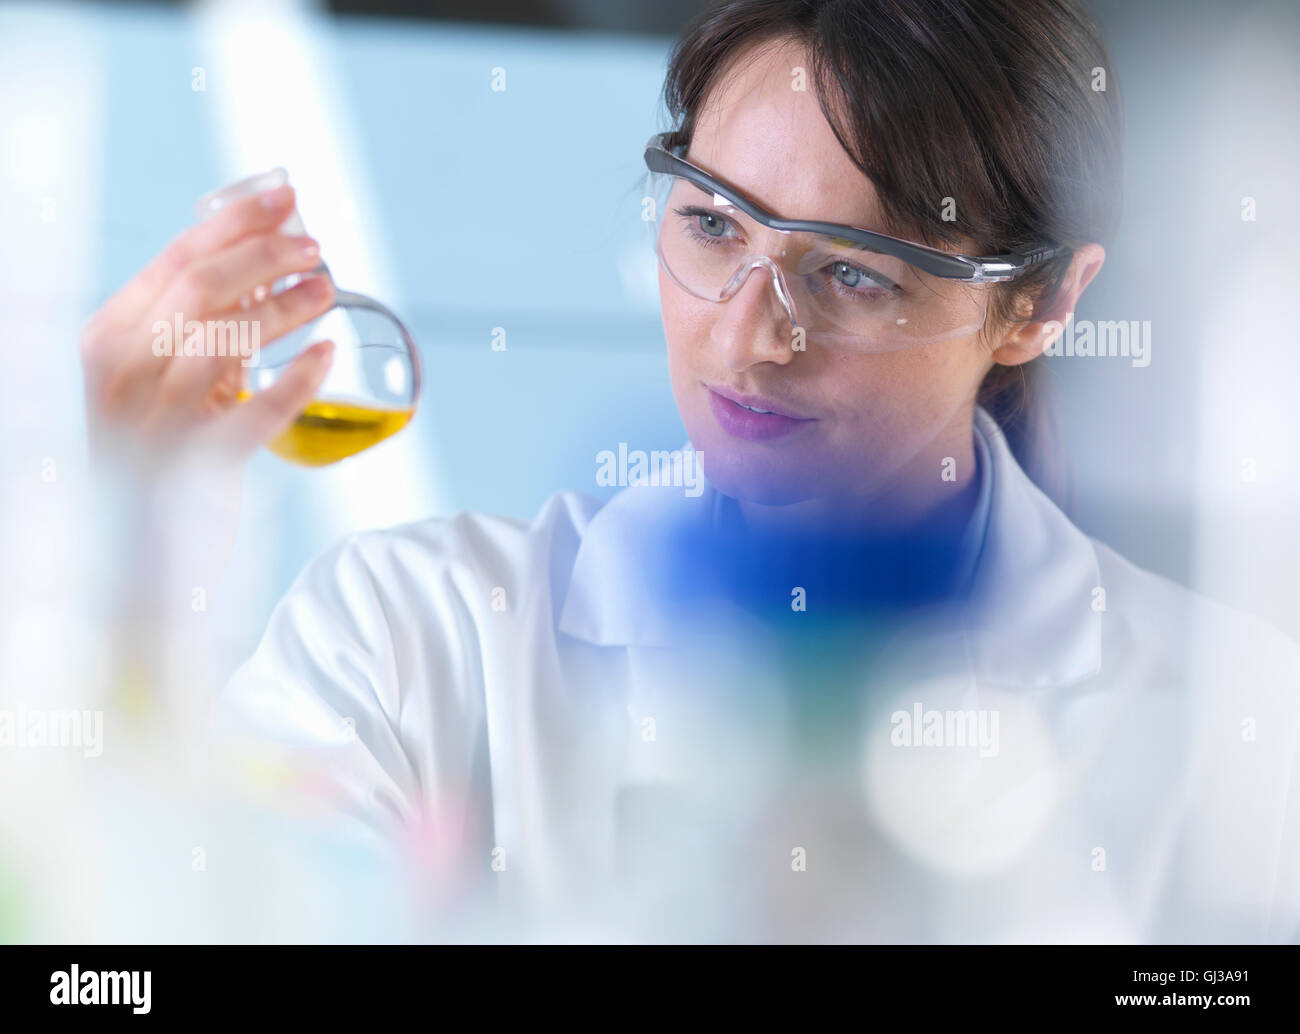 Visualizzazione dello scienziato formula chimica nel becher durante l'esperimento in laboratorio Foto Stock